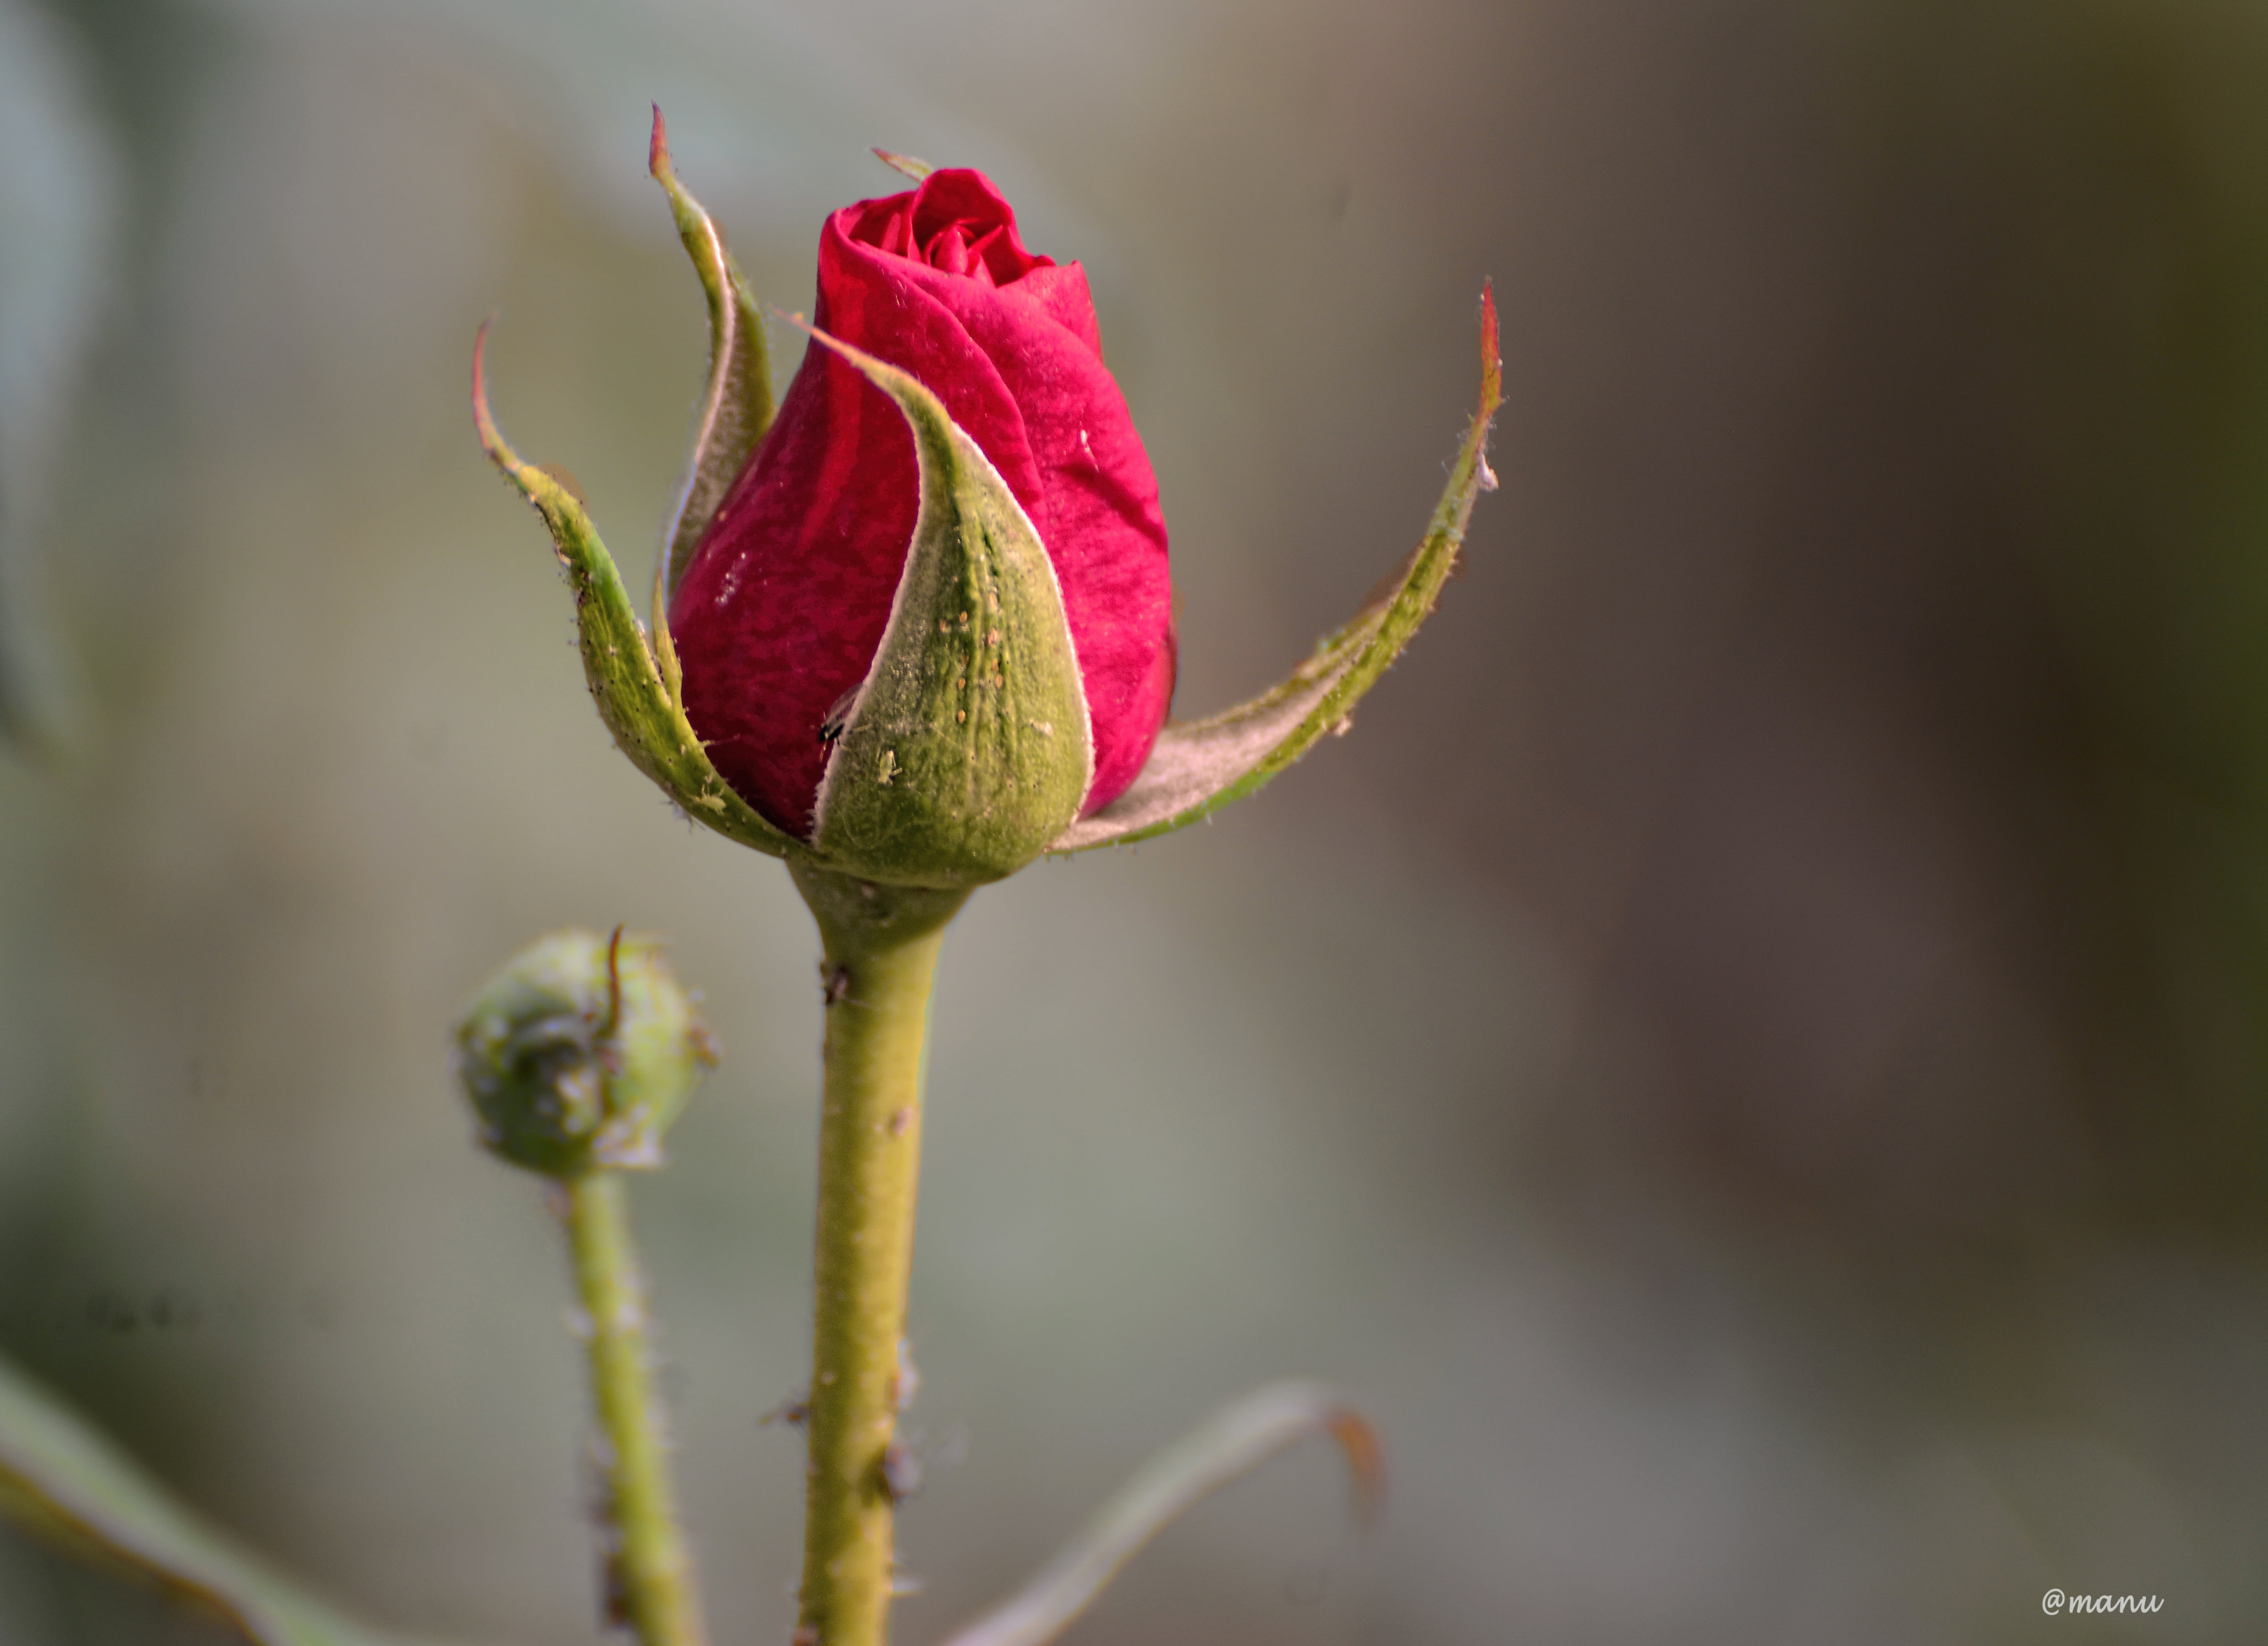 rosebud tapete,blume,knospe,blütenblatt,pflanze,blühende pflanze